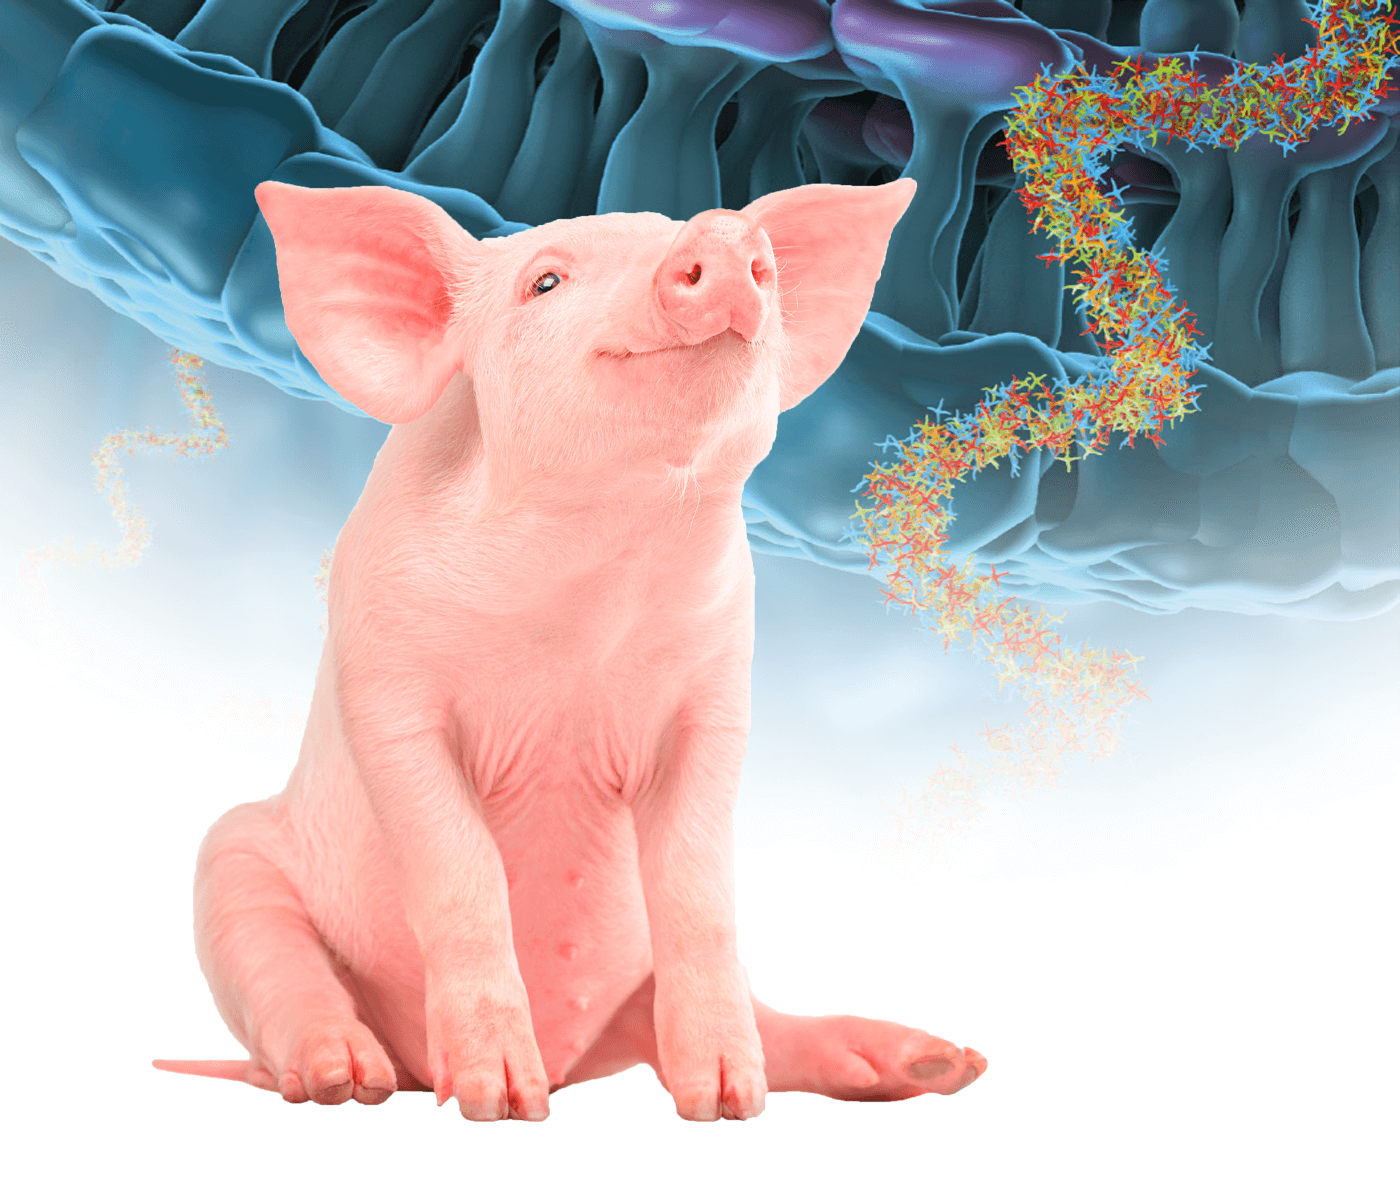 Uso racional de antimicrobianos en porcino: Antimicrobianos que actúan inhibiendo...